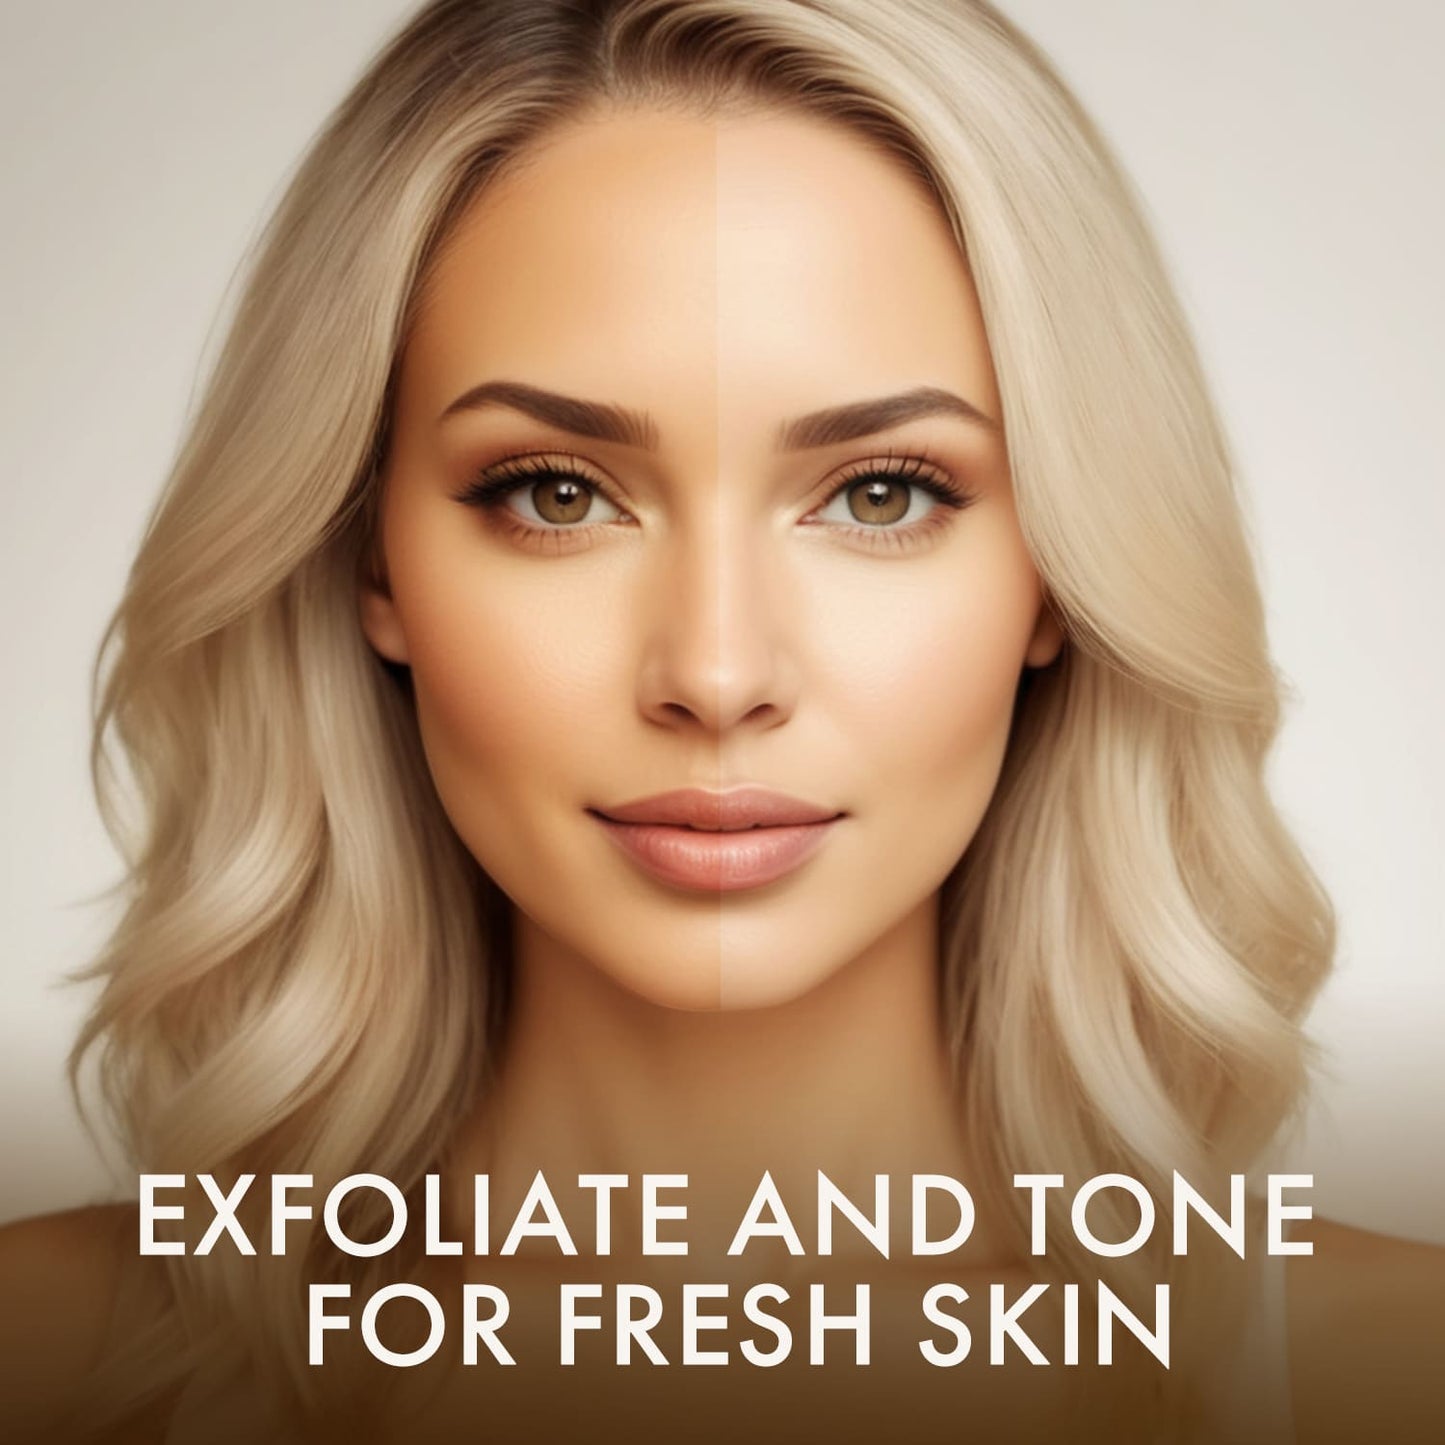 Face Exfoliator & Toner for Face - Revitalizing Facial Toner & Pore Reducing BHA Liquid Exfoliant